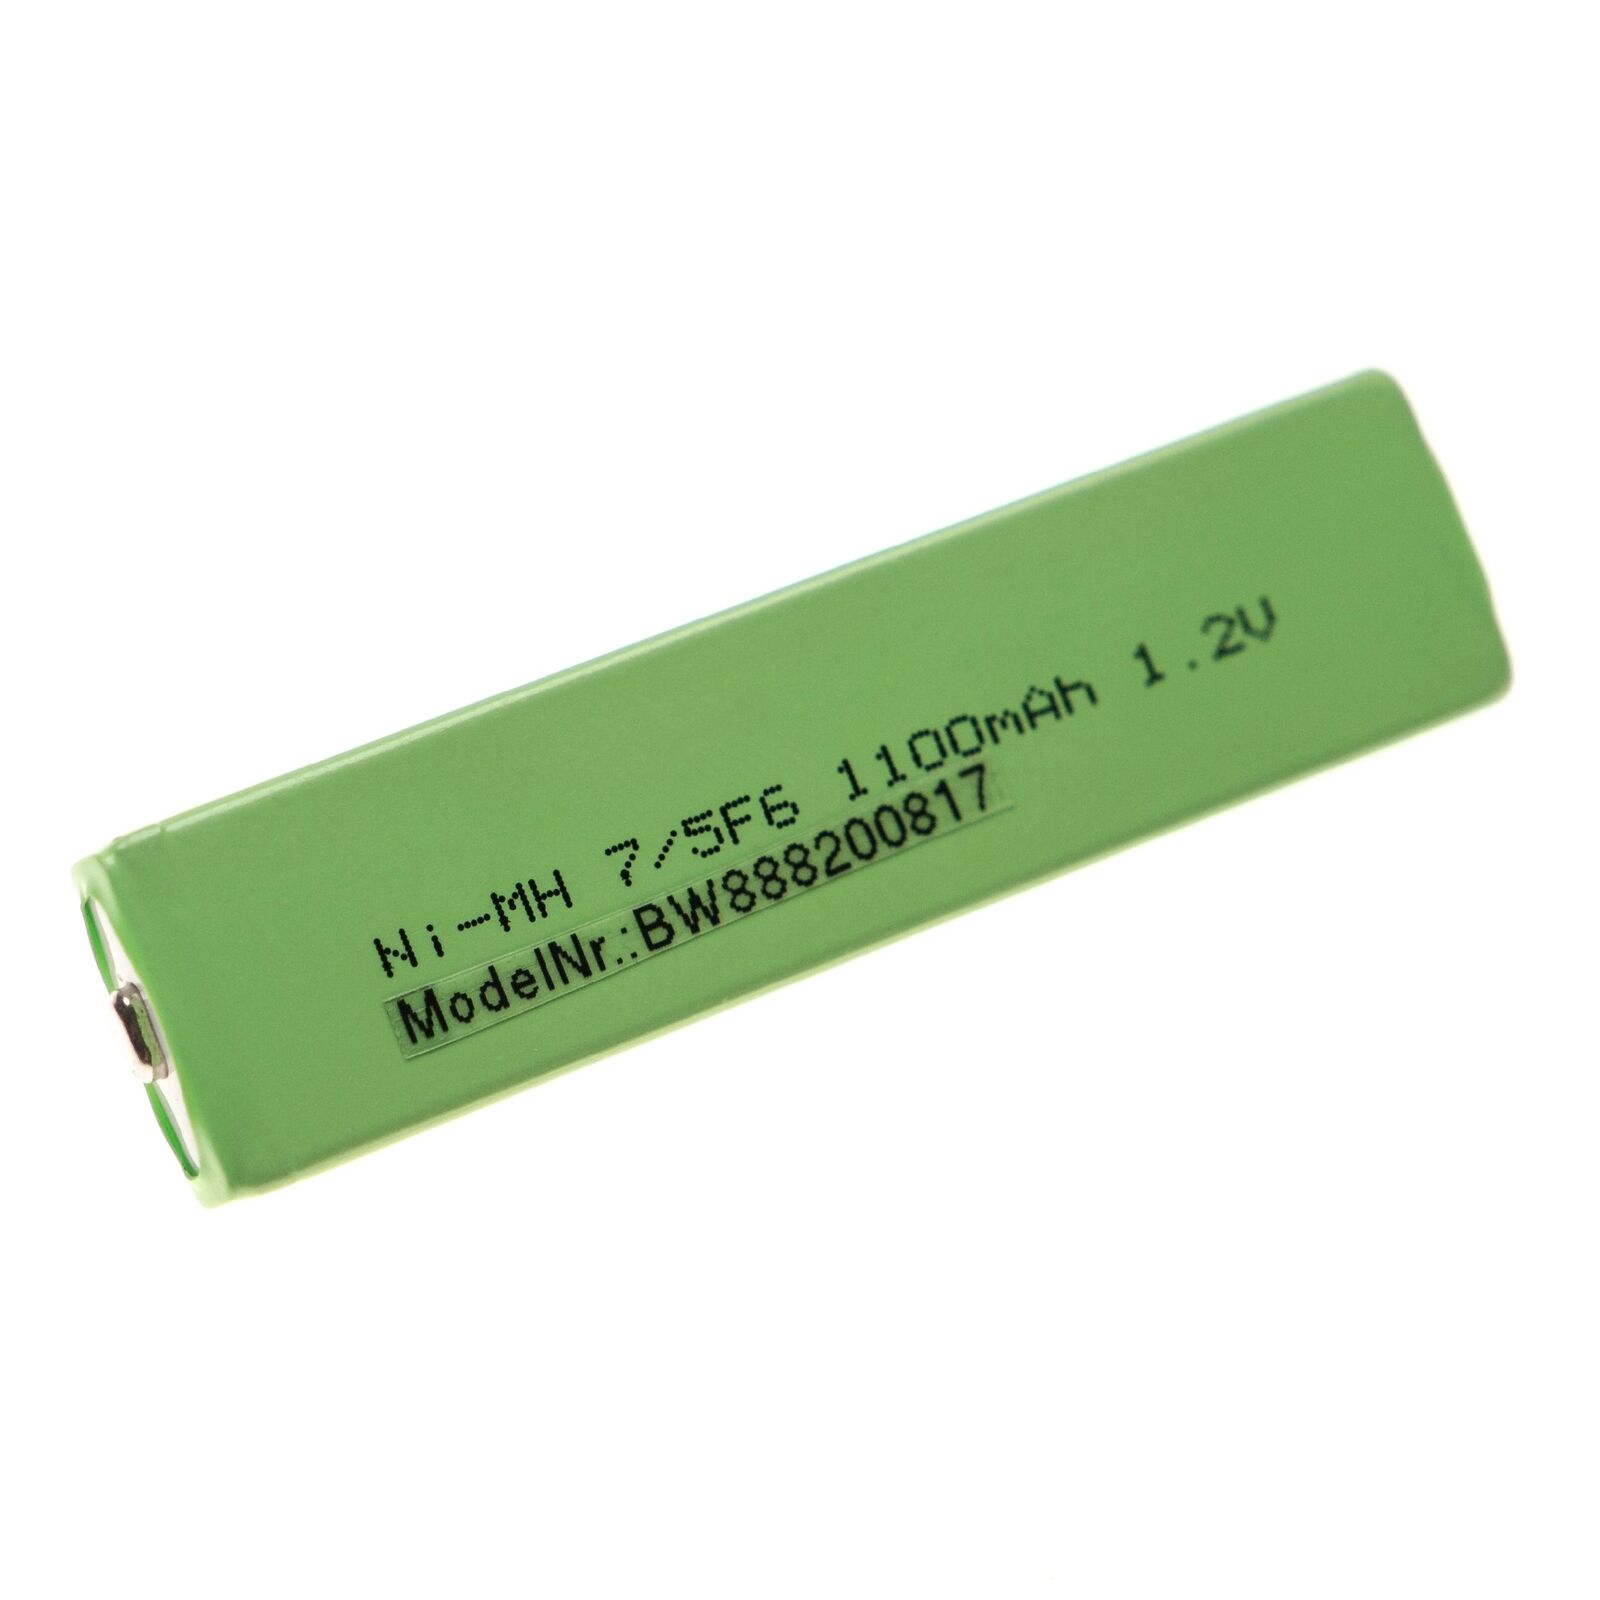 Bateria para sony NC-5WM NC-6WM D-E900 D-EJ1000